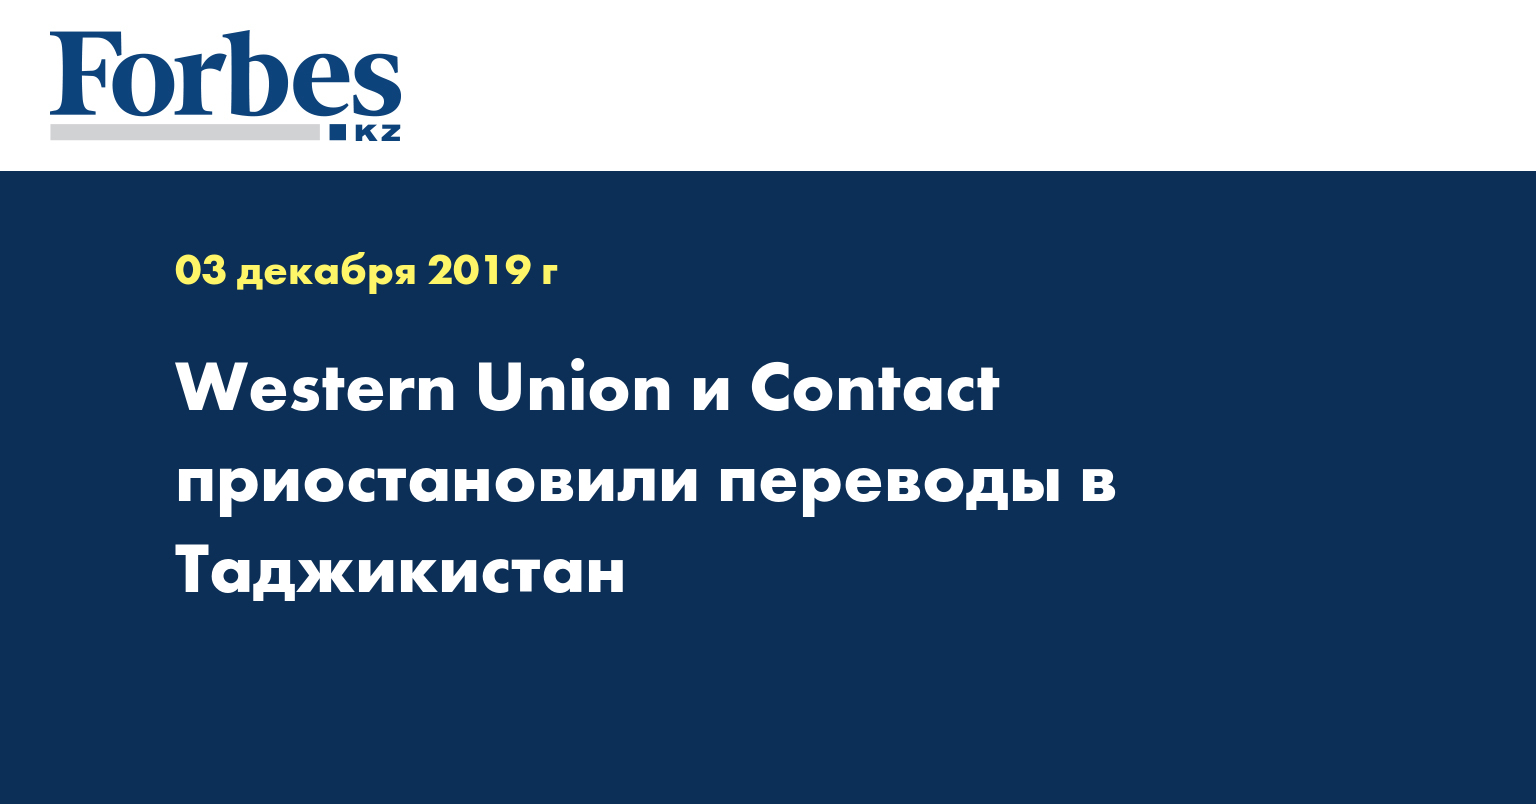 Western Union и Contact приостановили переводы в Таджикистан